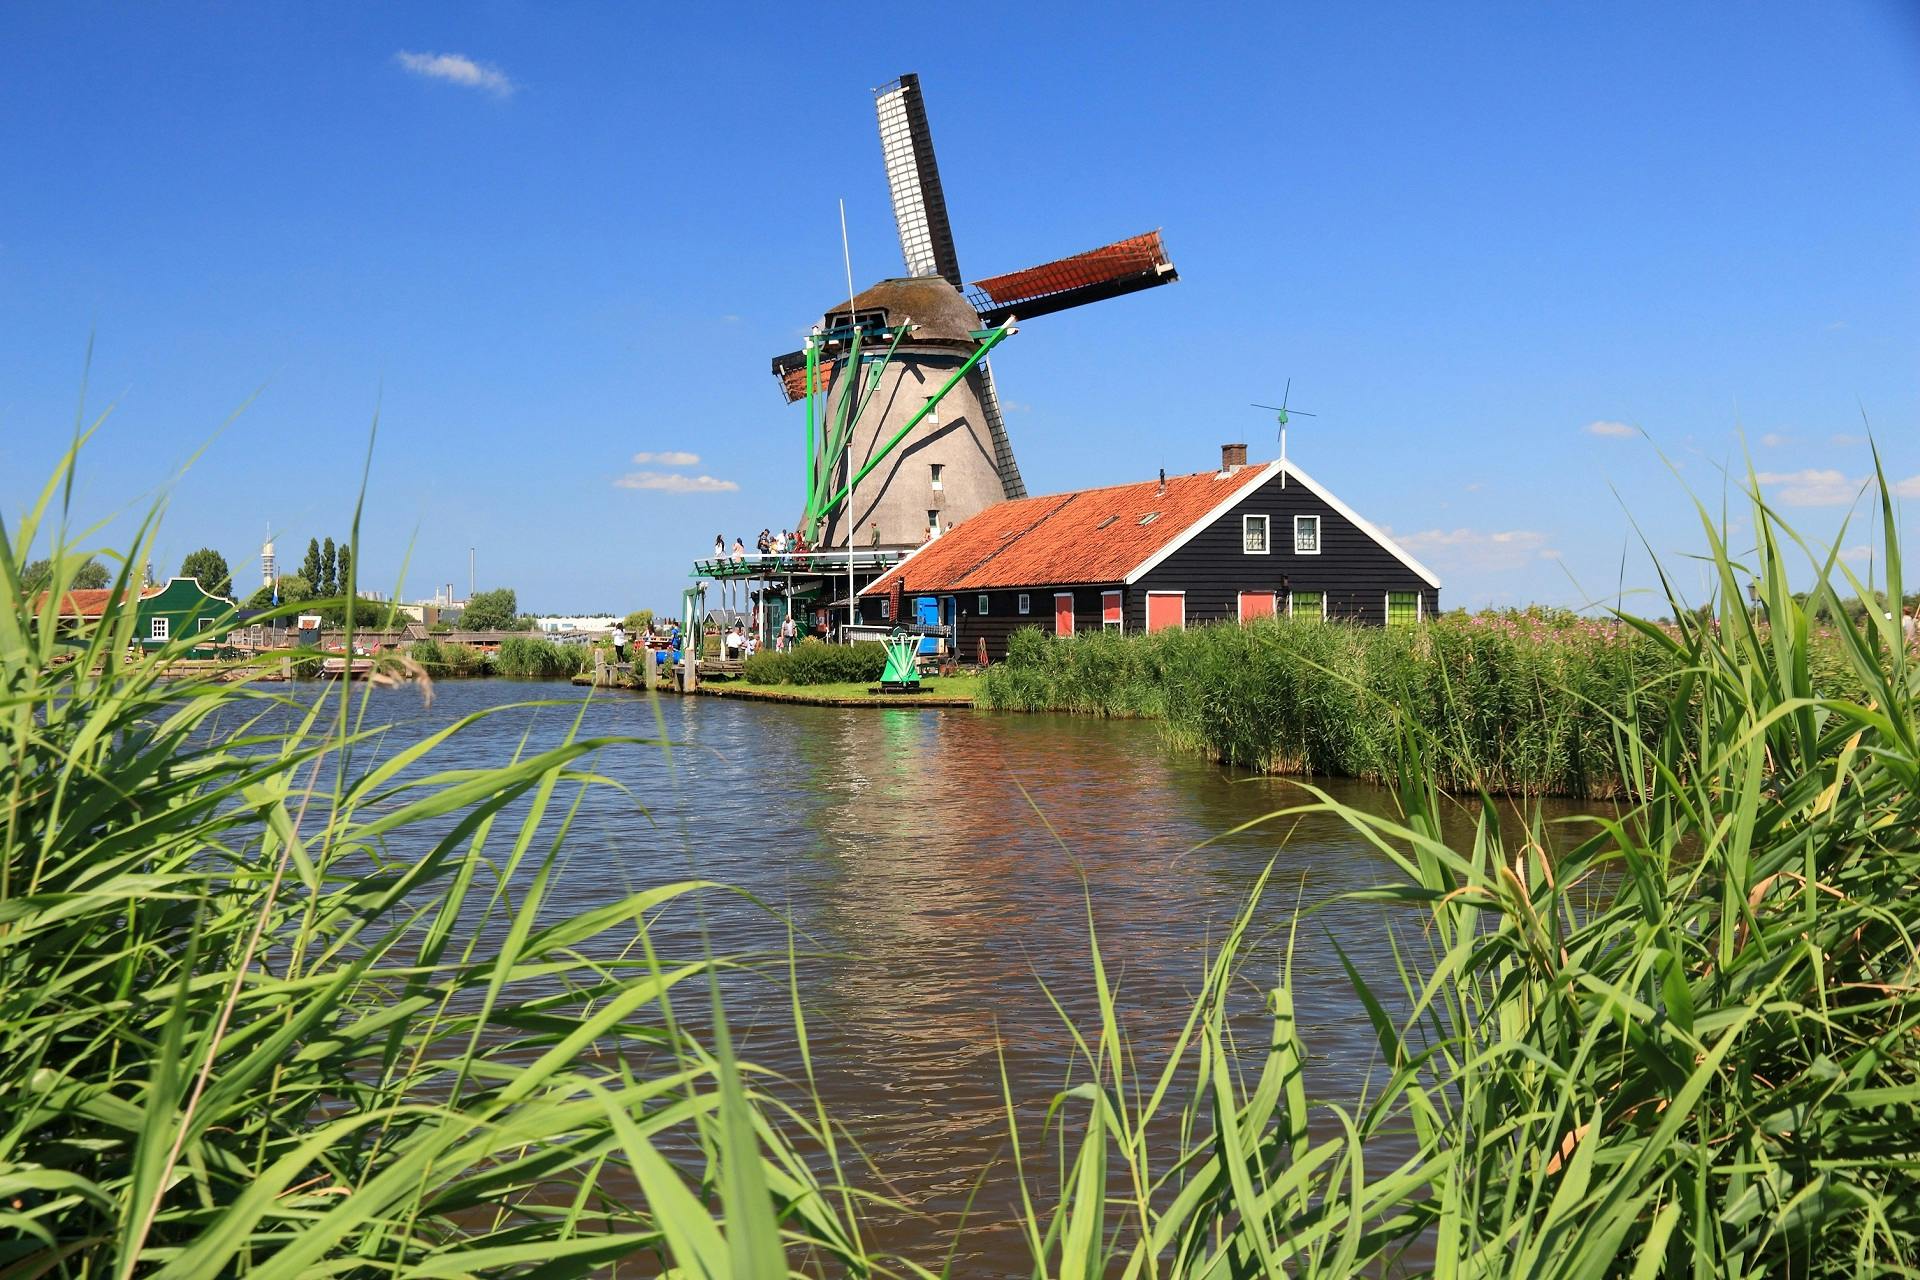 Excursión en grupo a los molinos de Zaanse Schans, Edam, Volendam y Marken